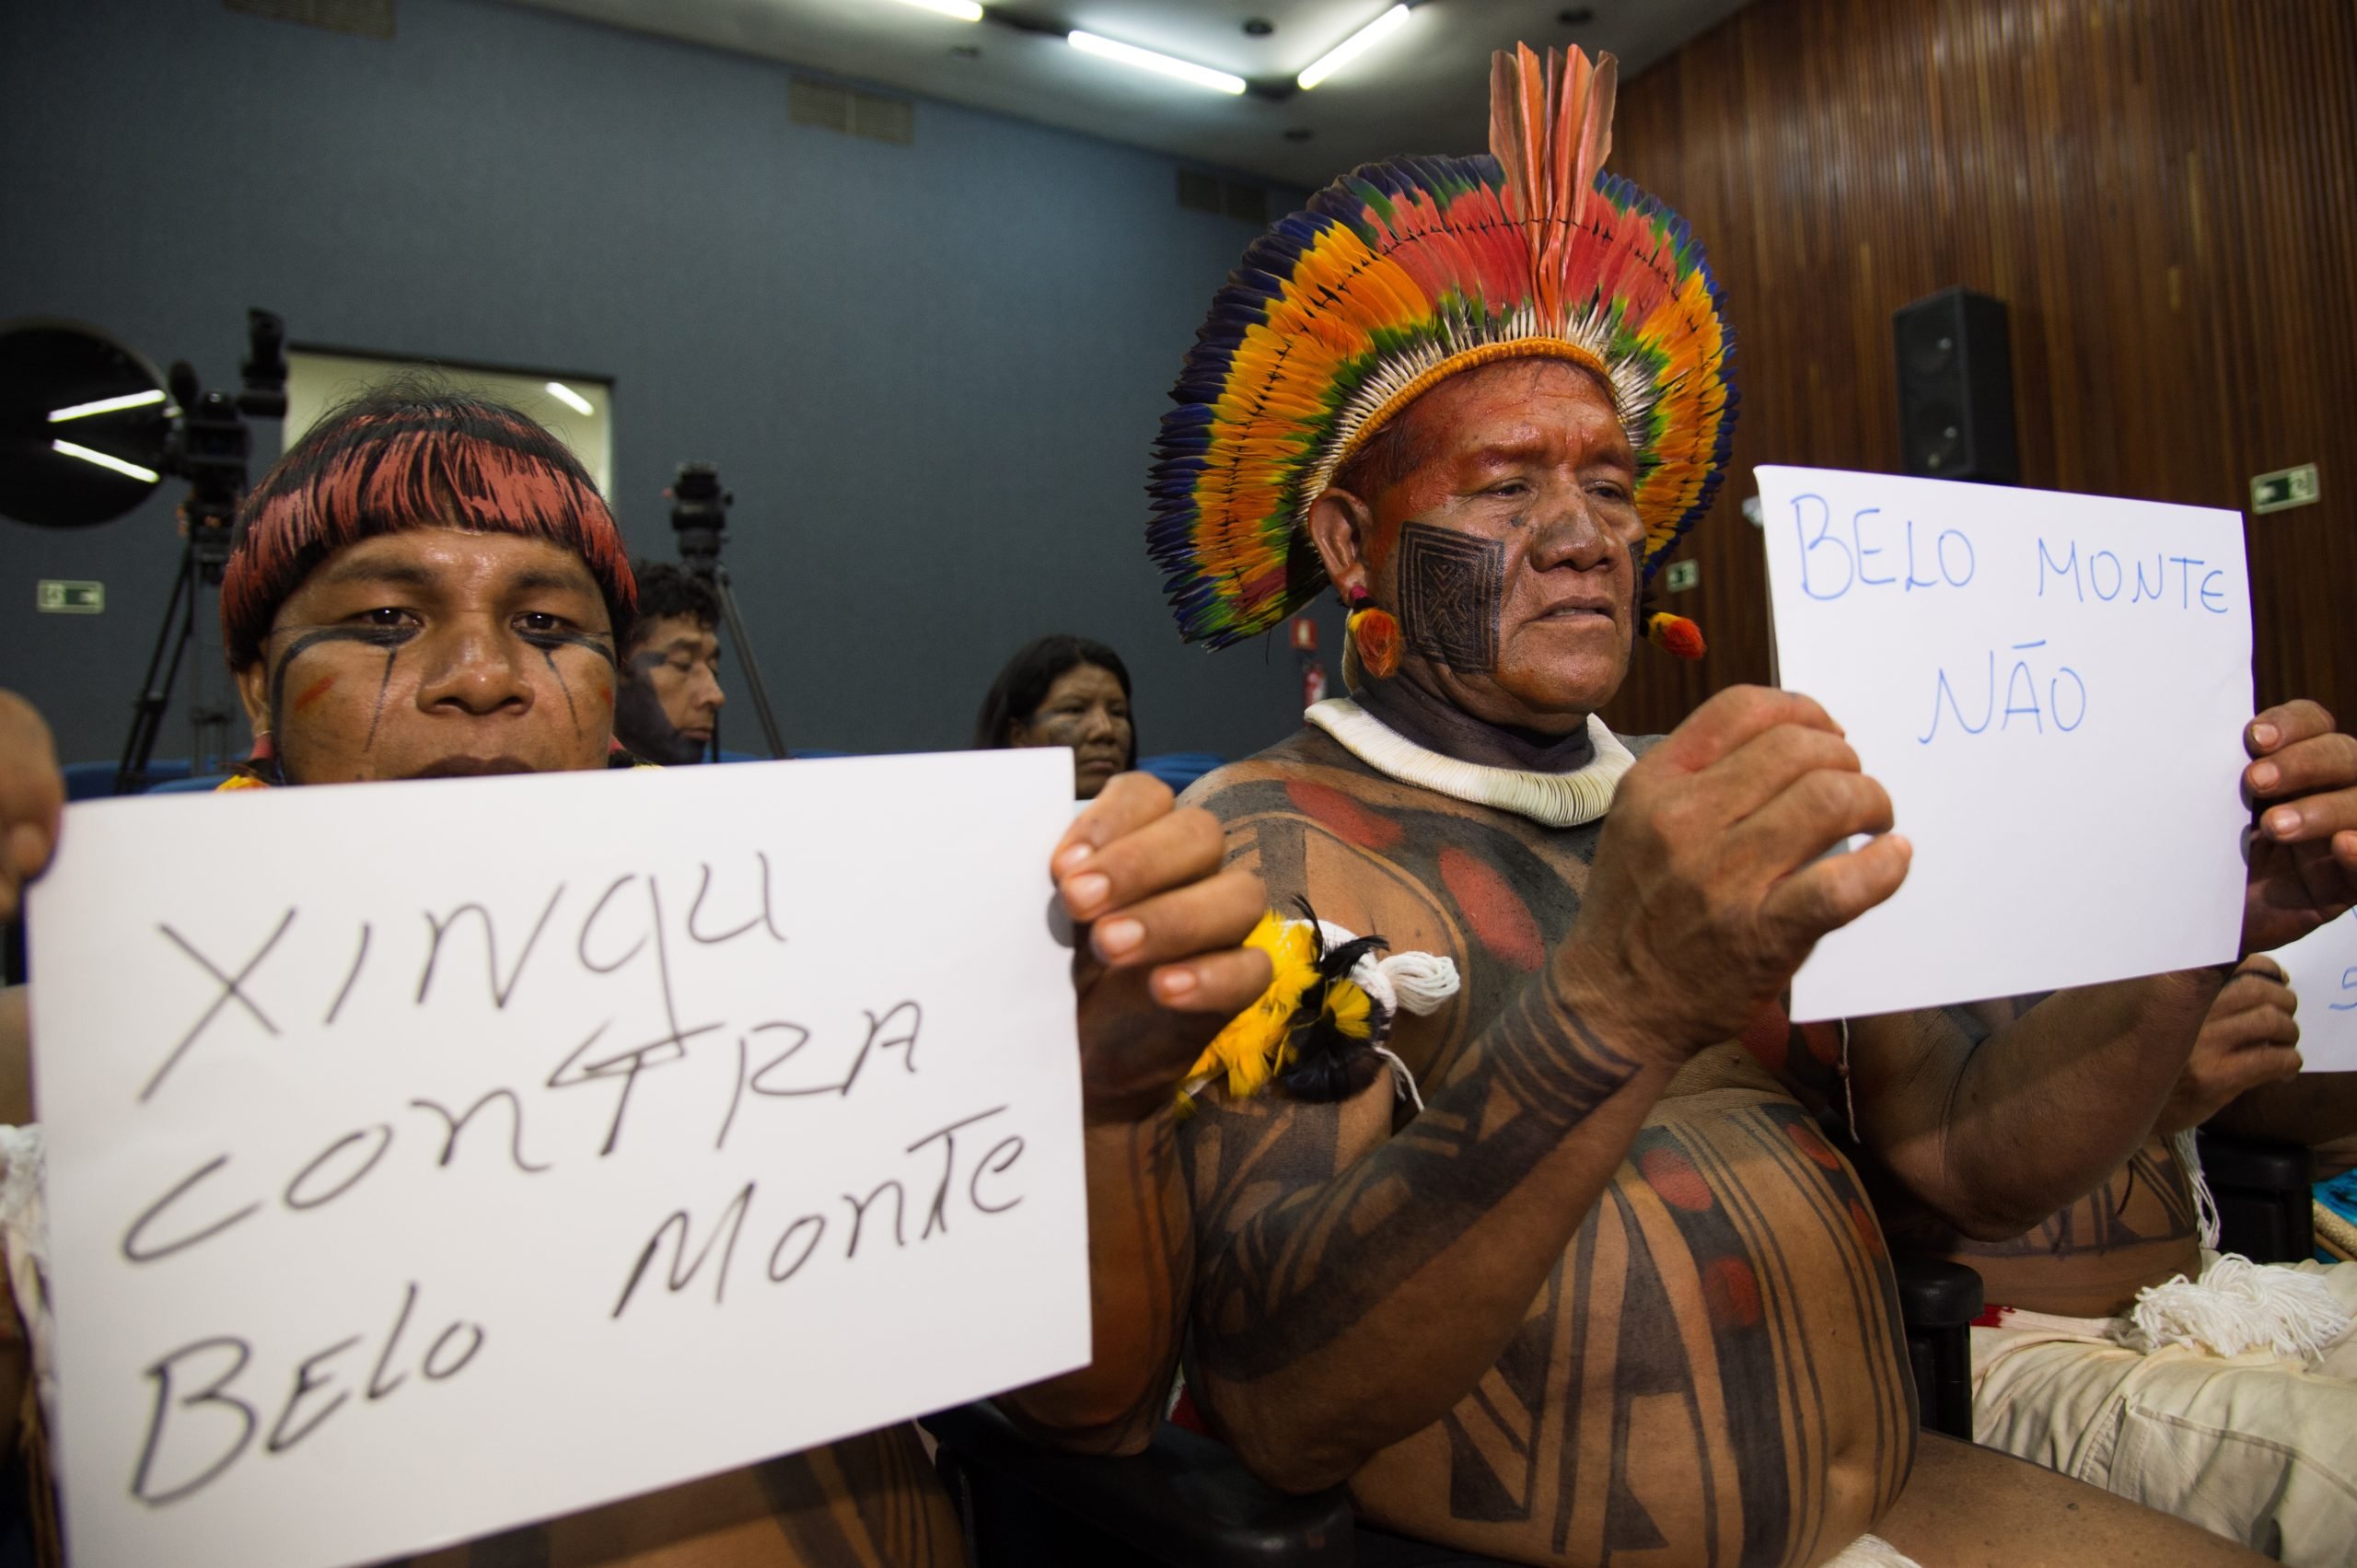 Indígenas con carteles que dicen "Xingu contra Belo Monte"